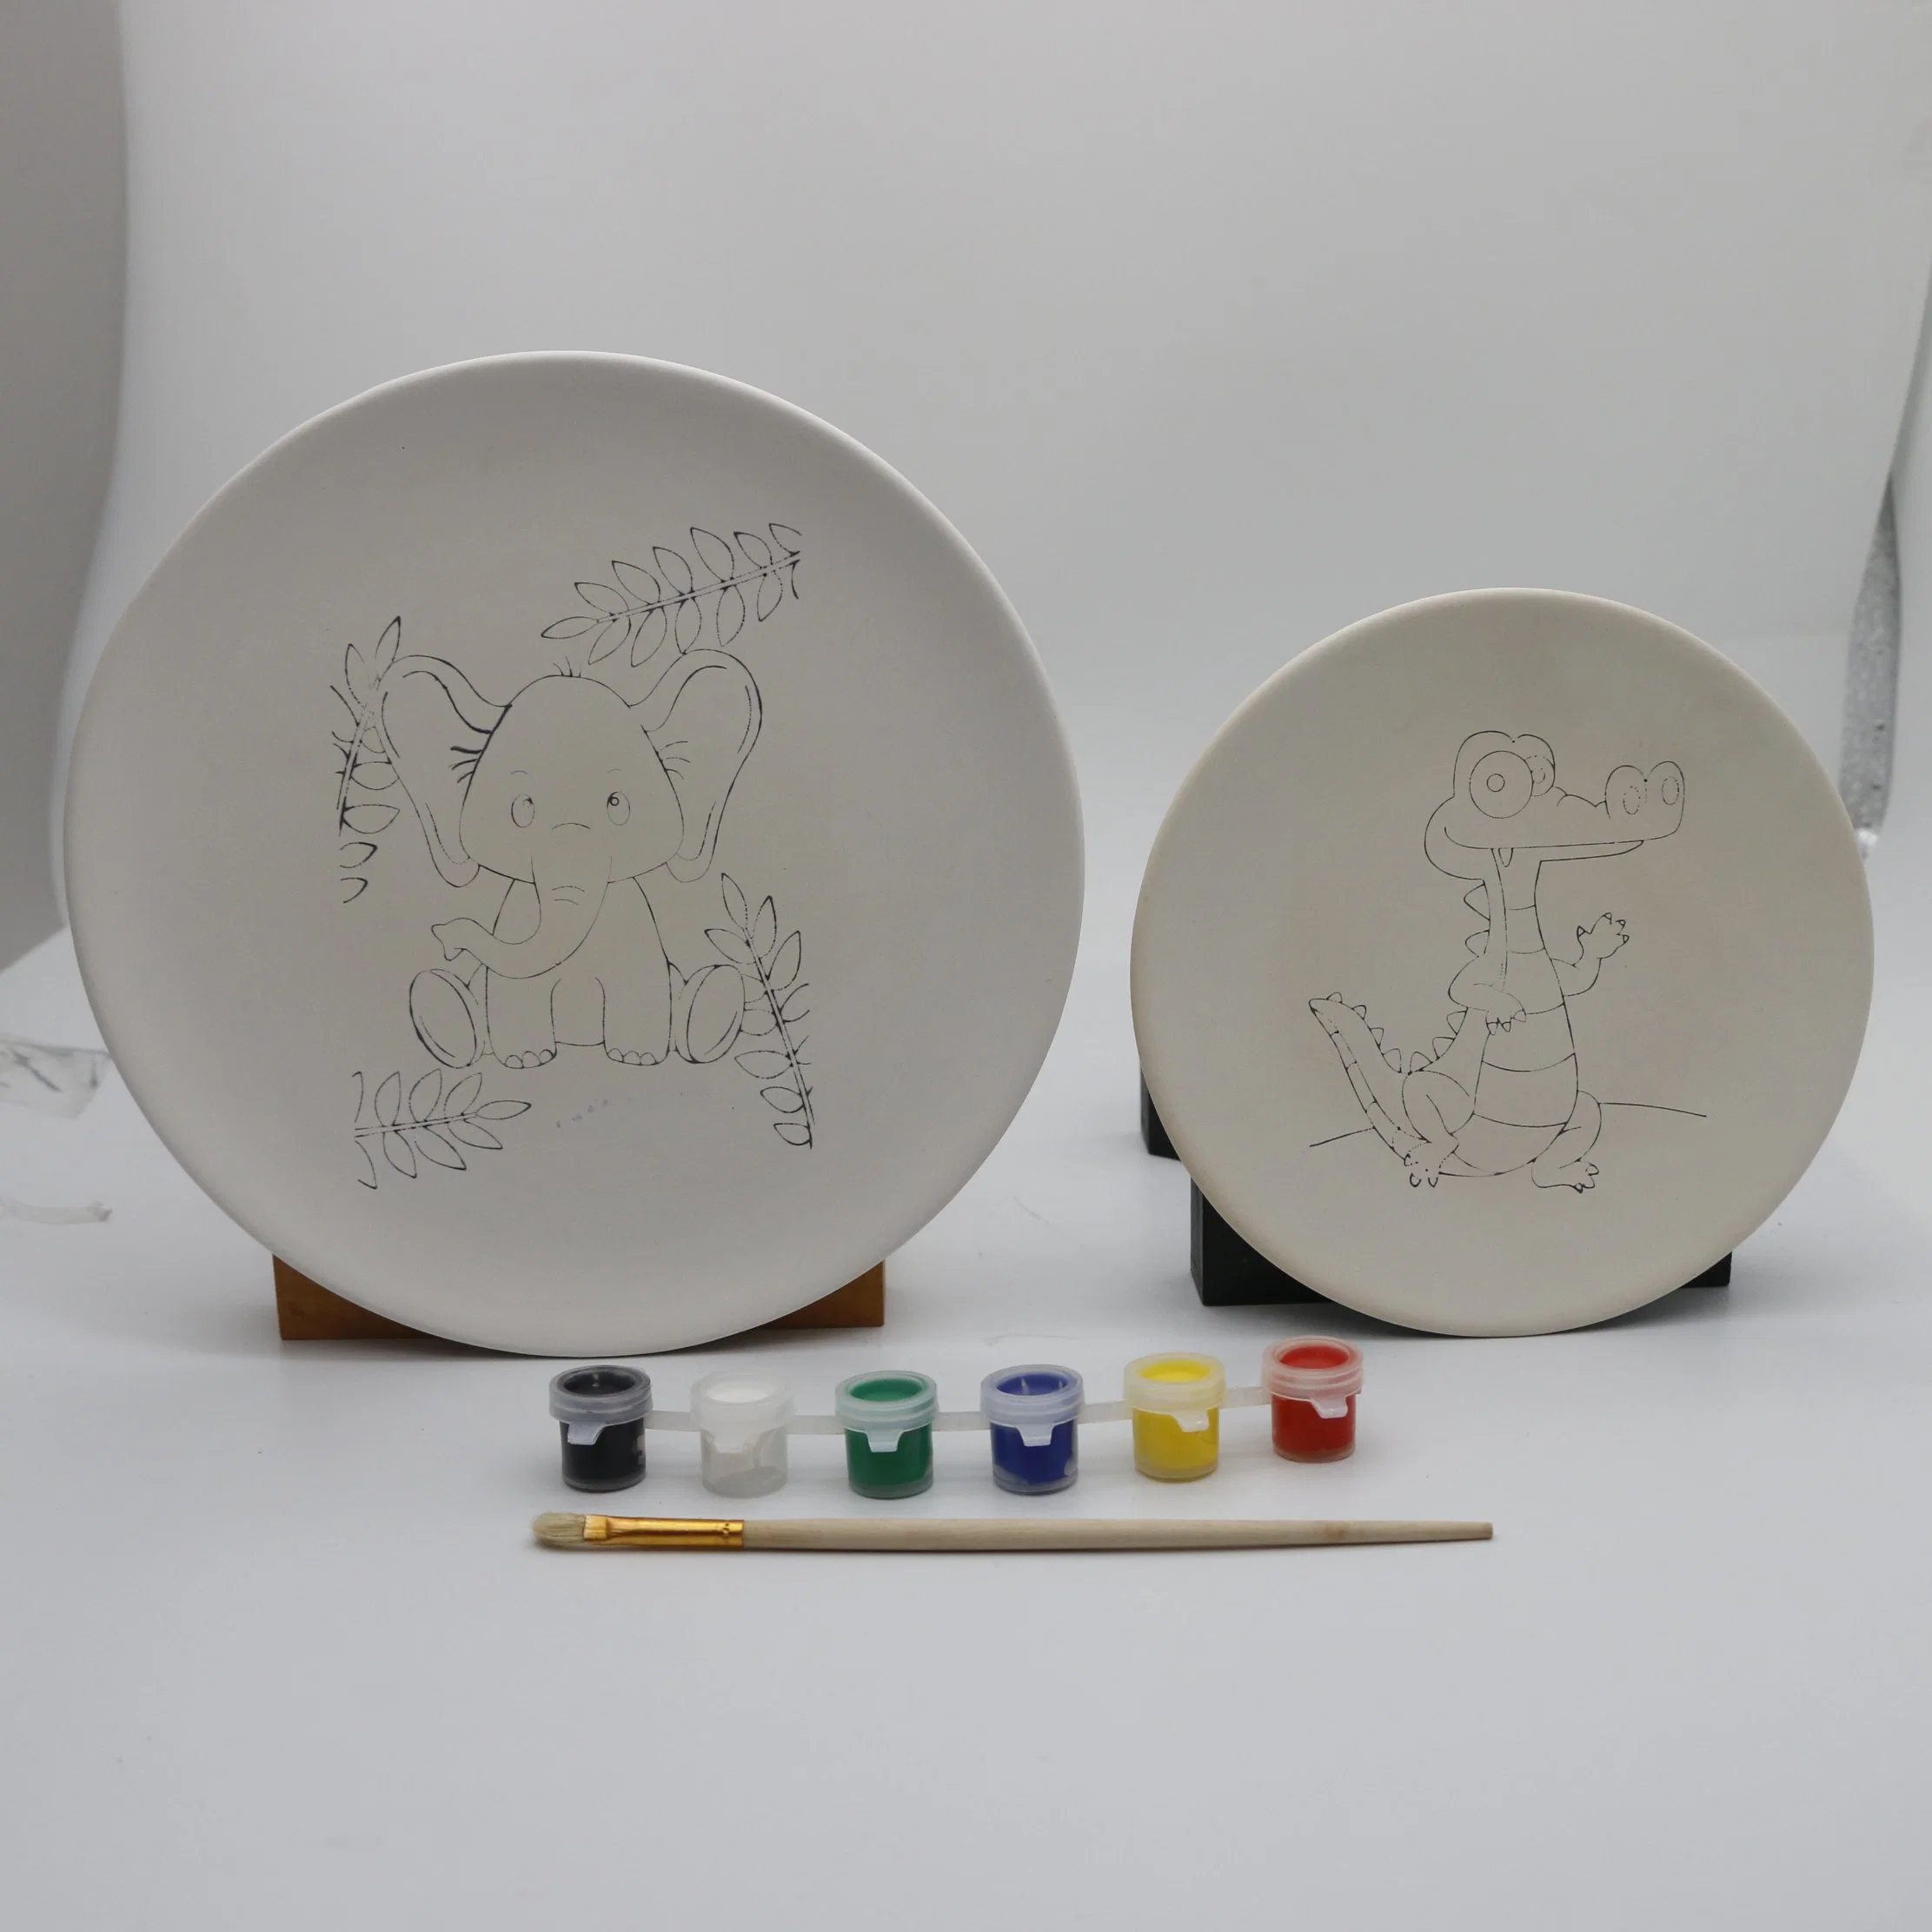 Kunst &amp; Handwerk Malerei DIY Keramik Malerei Kit für Kinder Malen Sie Ihre Eigene Platte